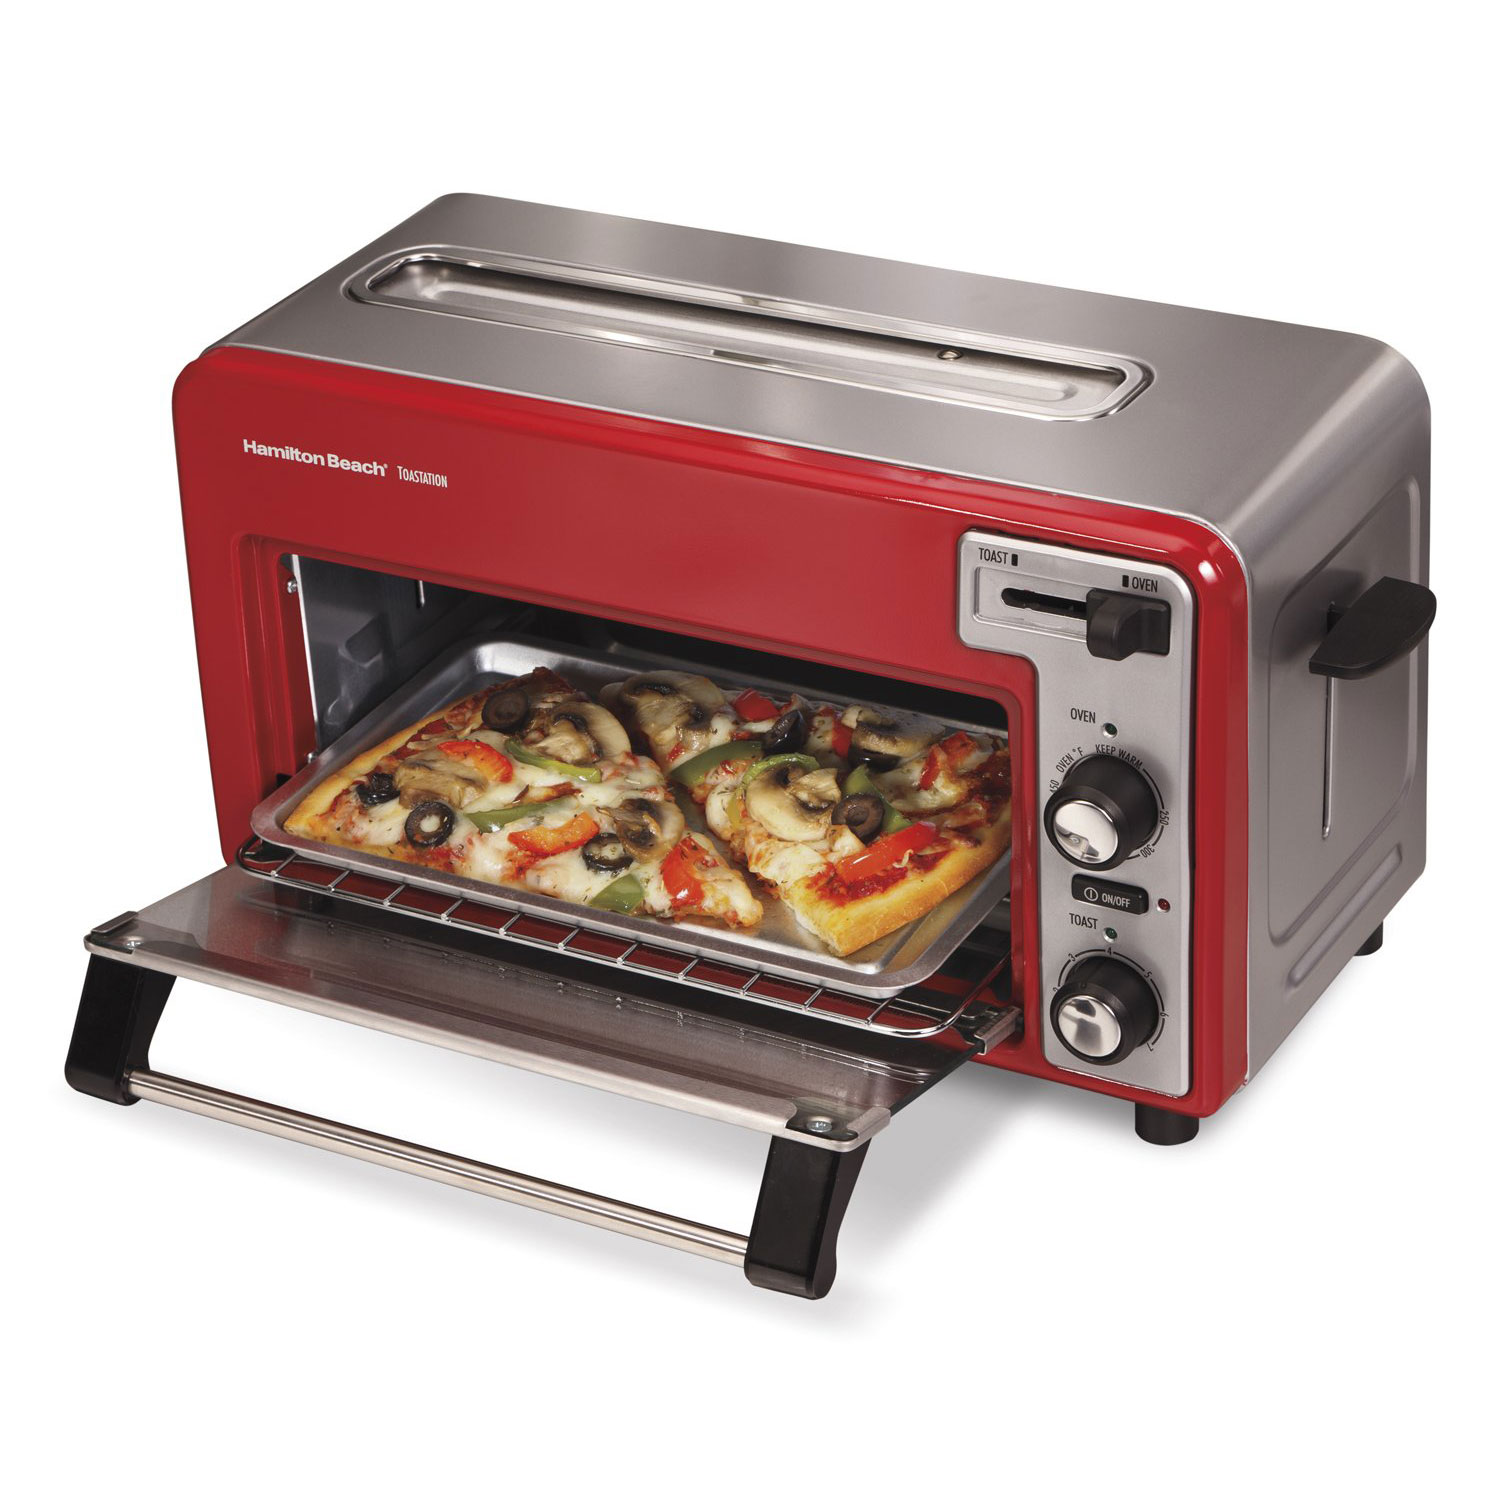 Купить печь 3 в 1. Мини печь Toaster Oven. Тостер ростер Тефаль. Hamilton Beach Toastation Oven with 2-Slice Toaster. Тостер Concord CD-278 Toaster Oven.